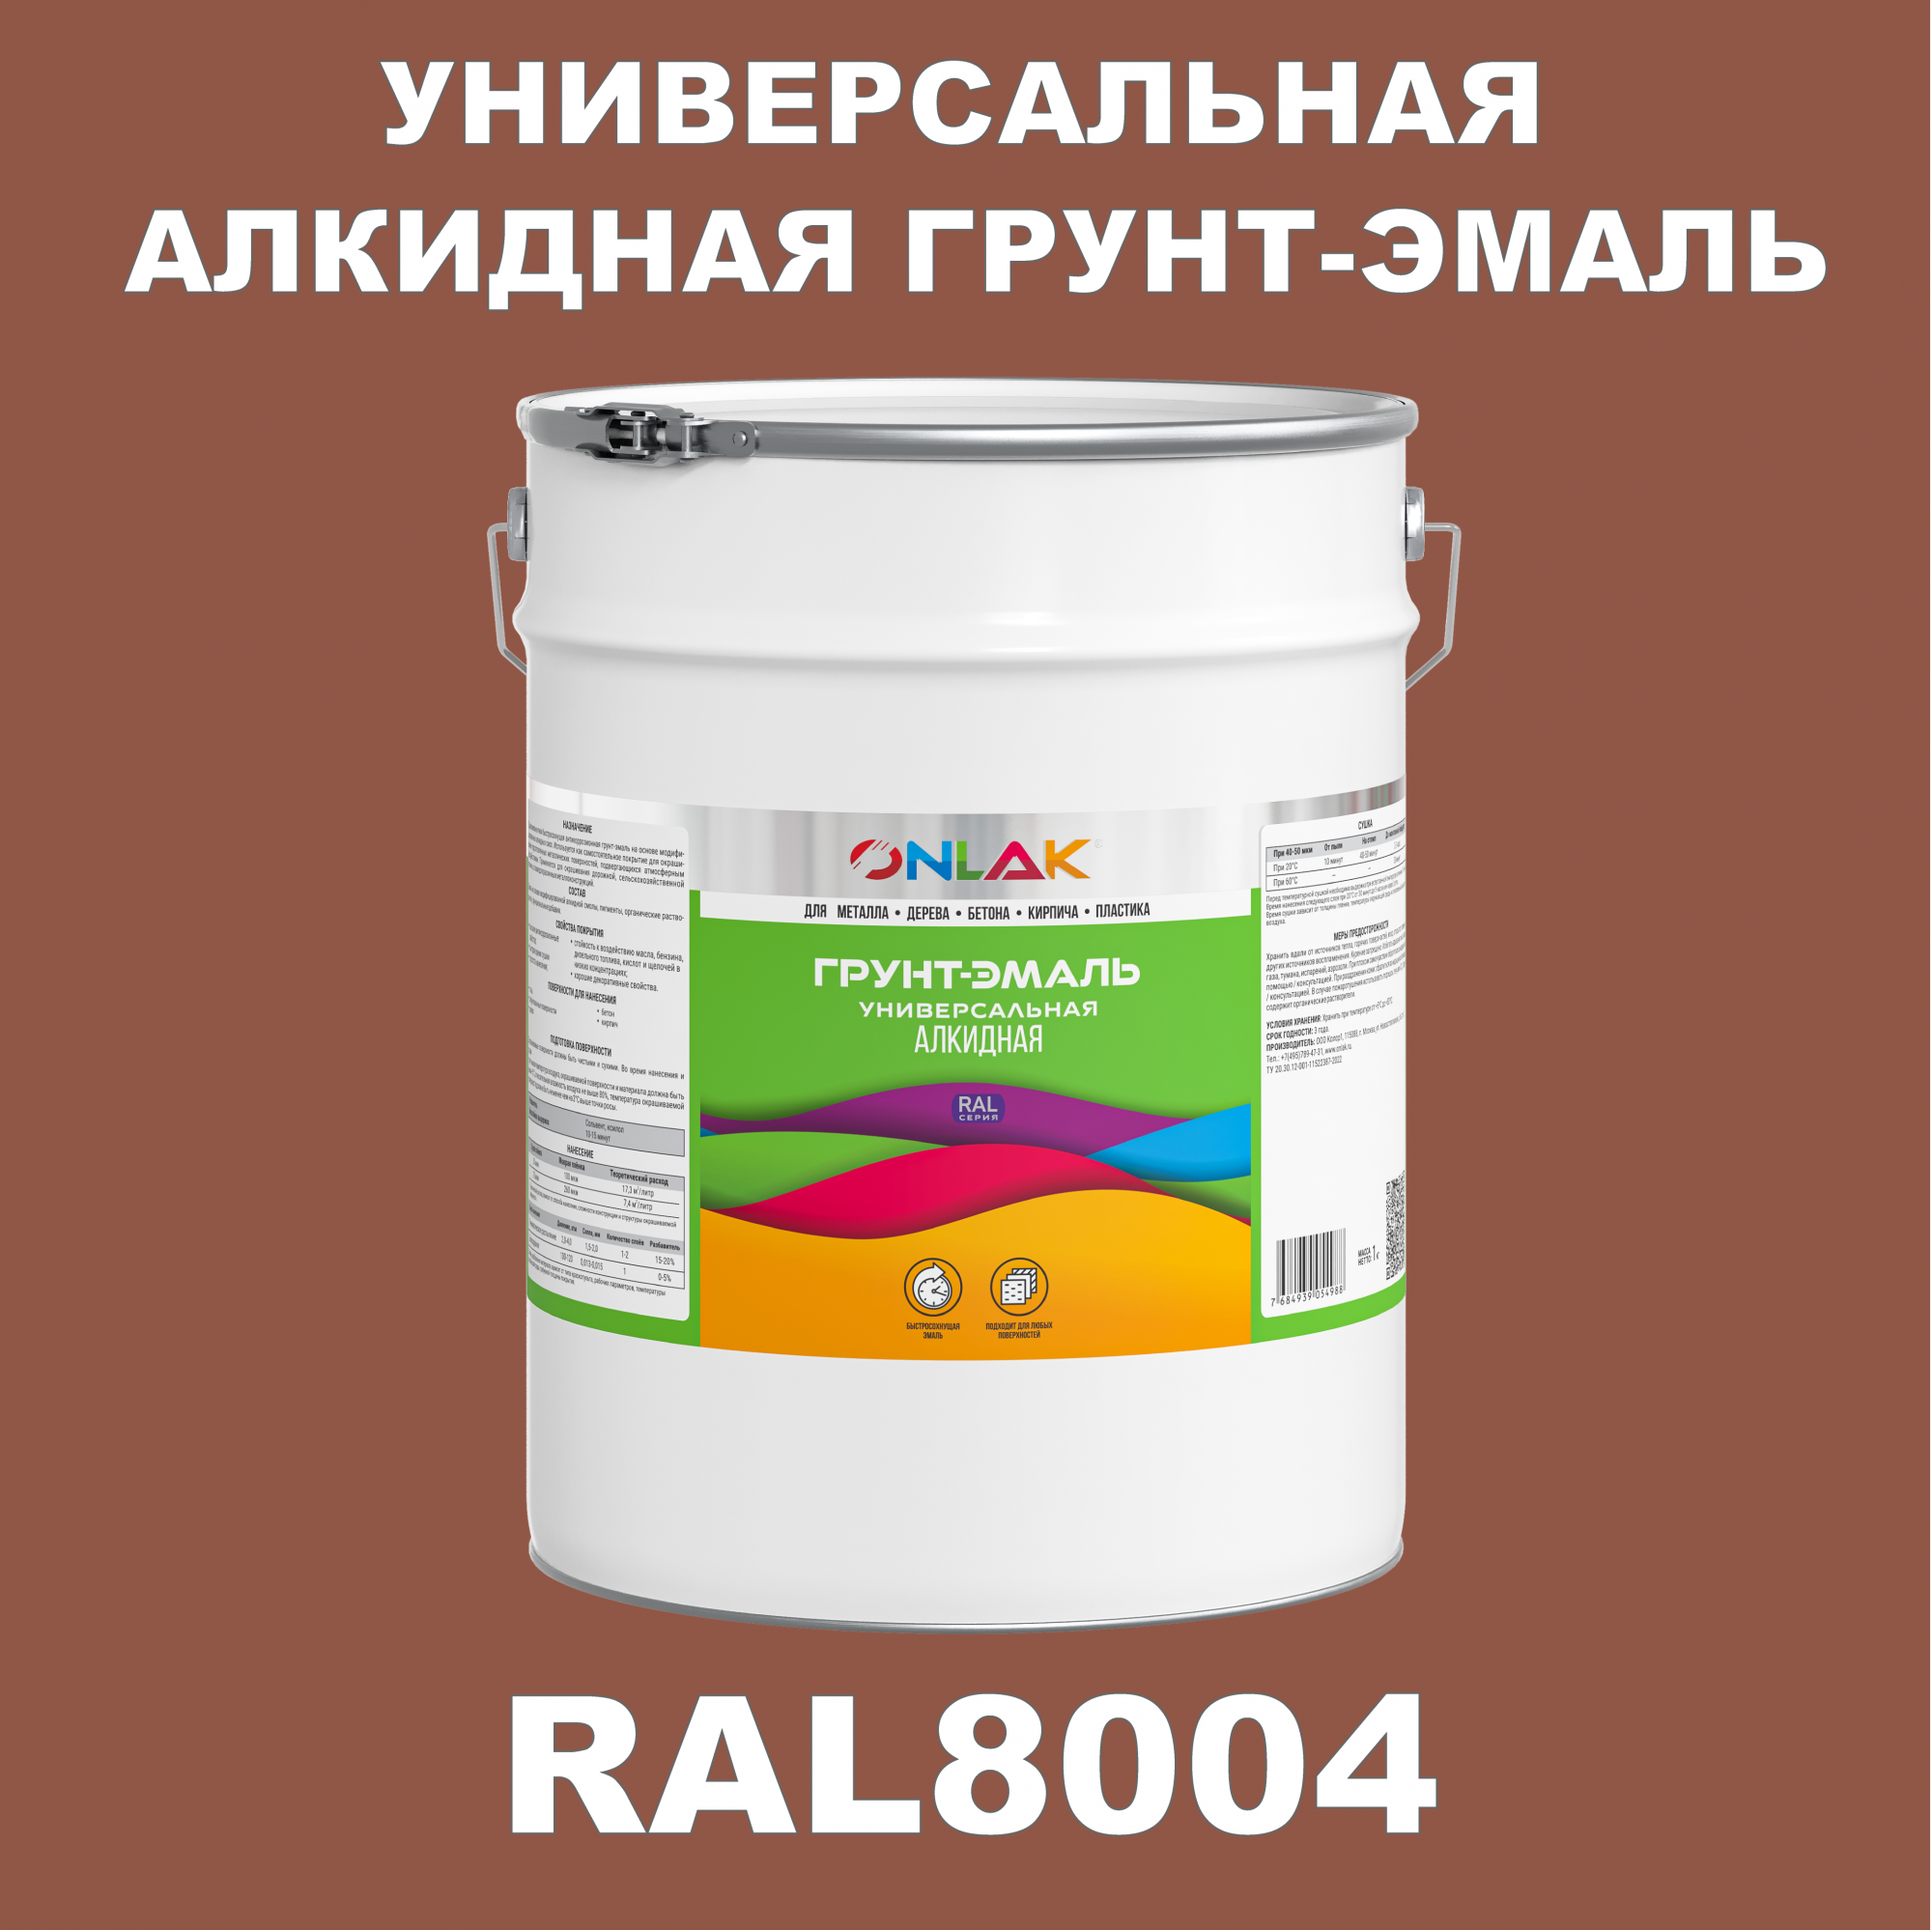 Грунт-эмаль ONLAK 1К RAL8004 антикоррозионная алкидная по металлу по ржавчине 20 кг грунт эмаль аэрозольная престиж 3в1 алкидная коричневая ral 8017 425 мл 0 425 кг